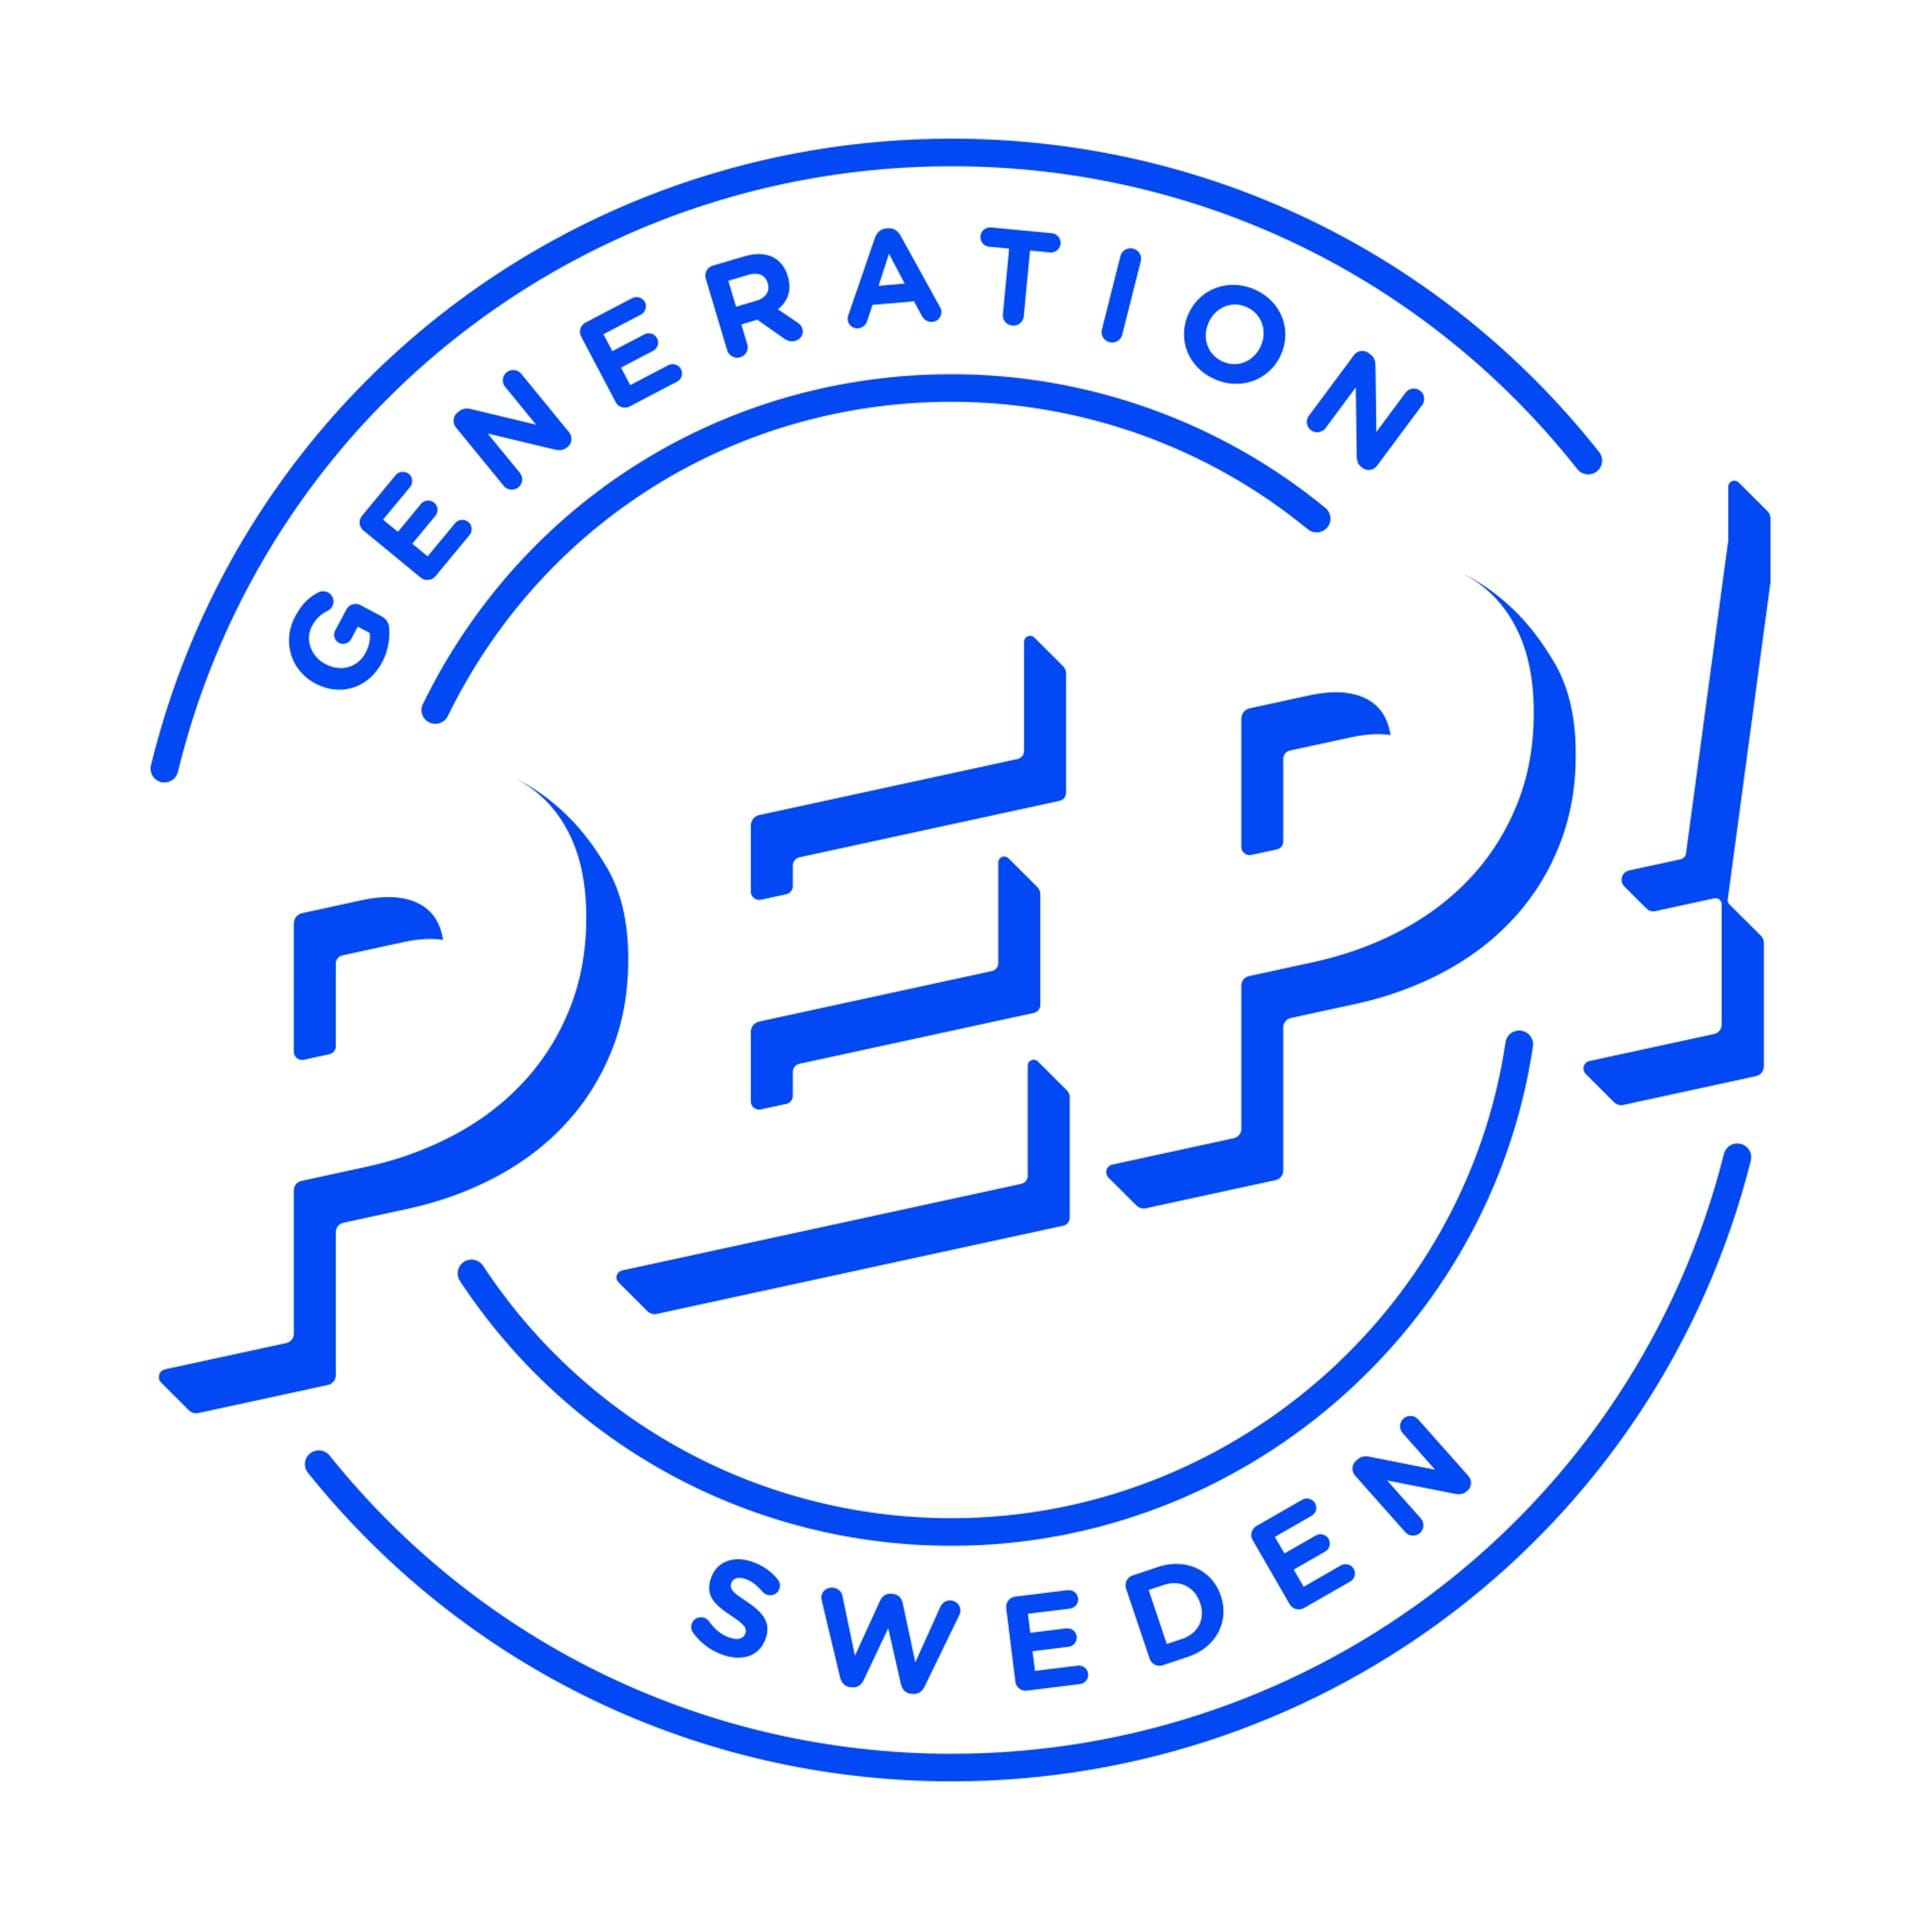 Generation Pep logotyp